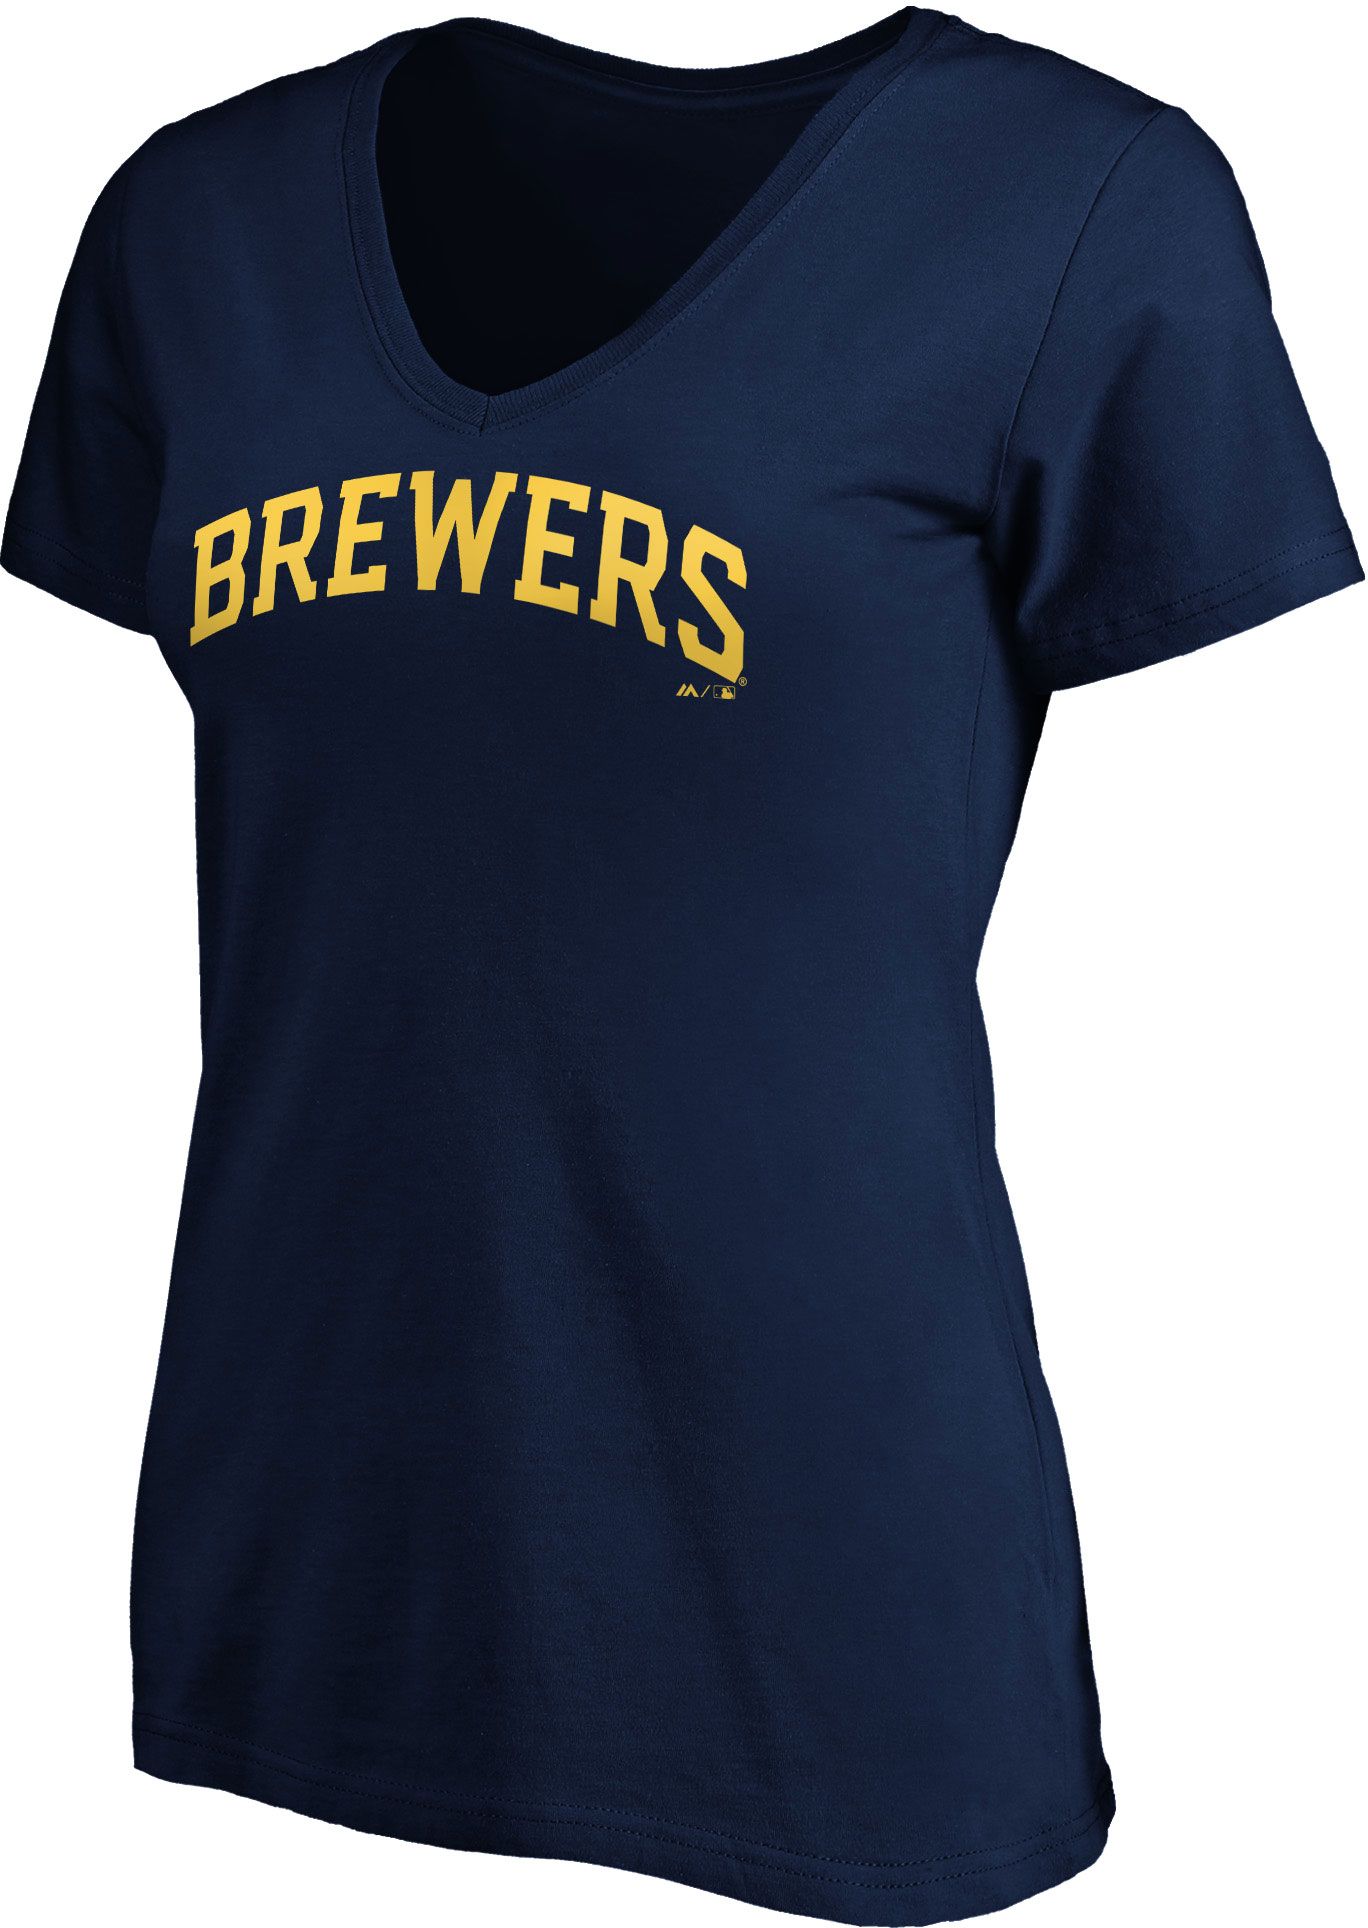 brewers shirt womens